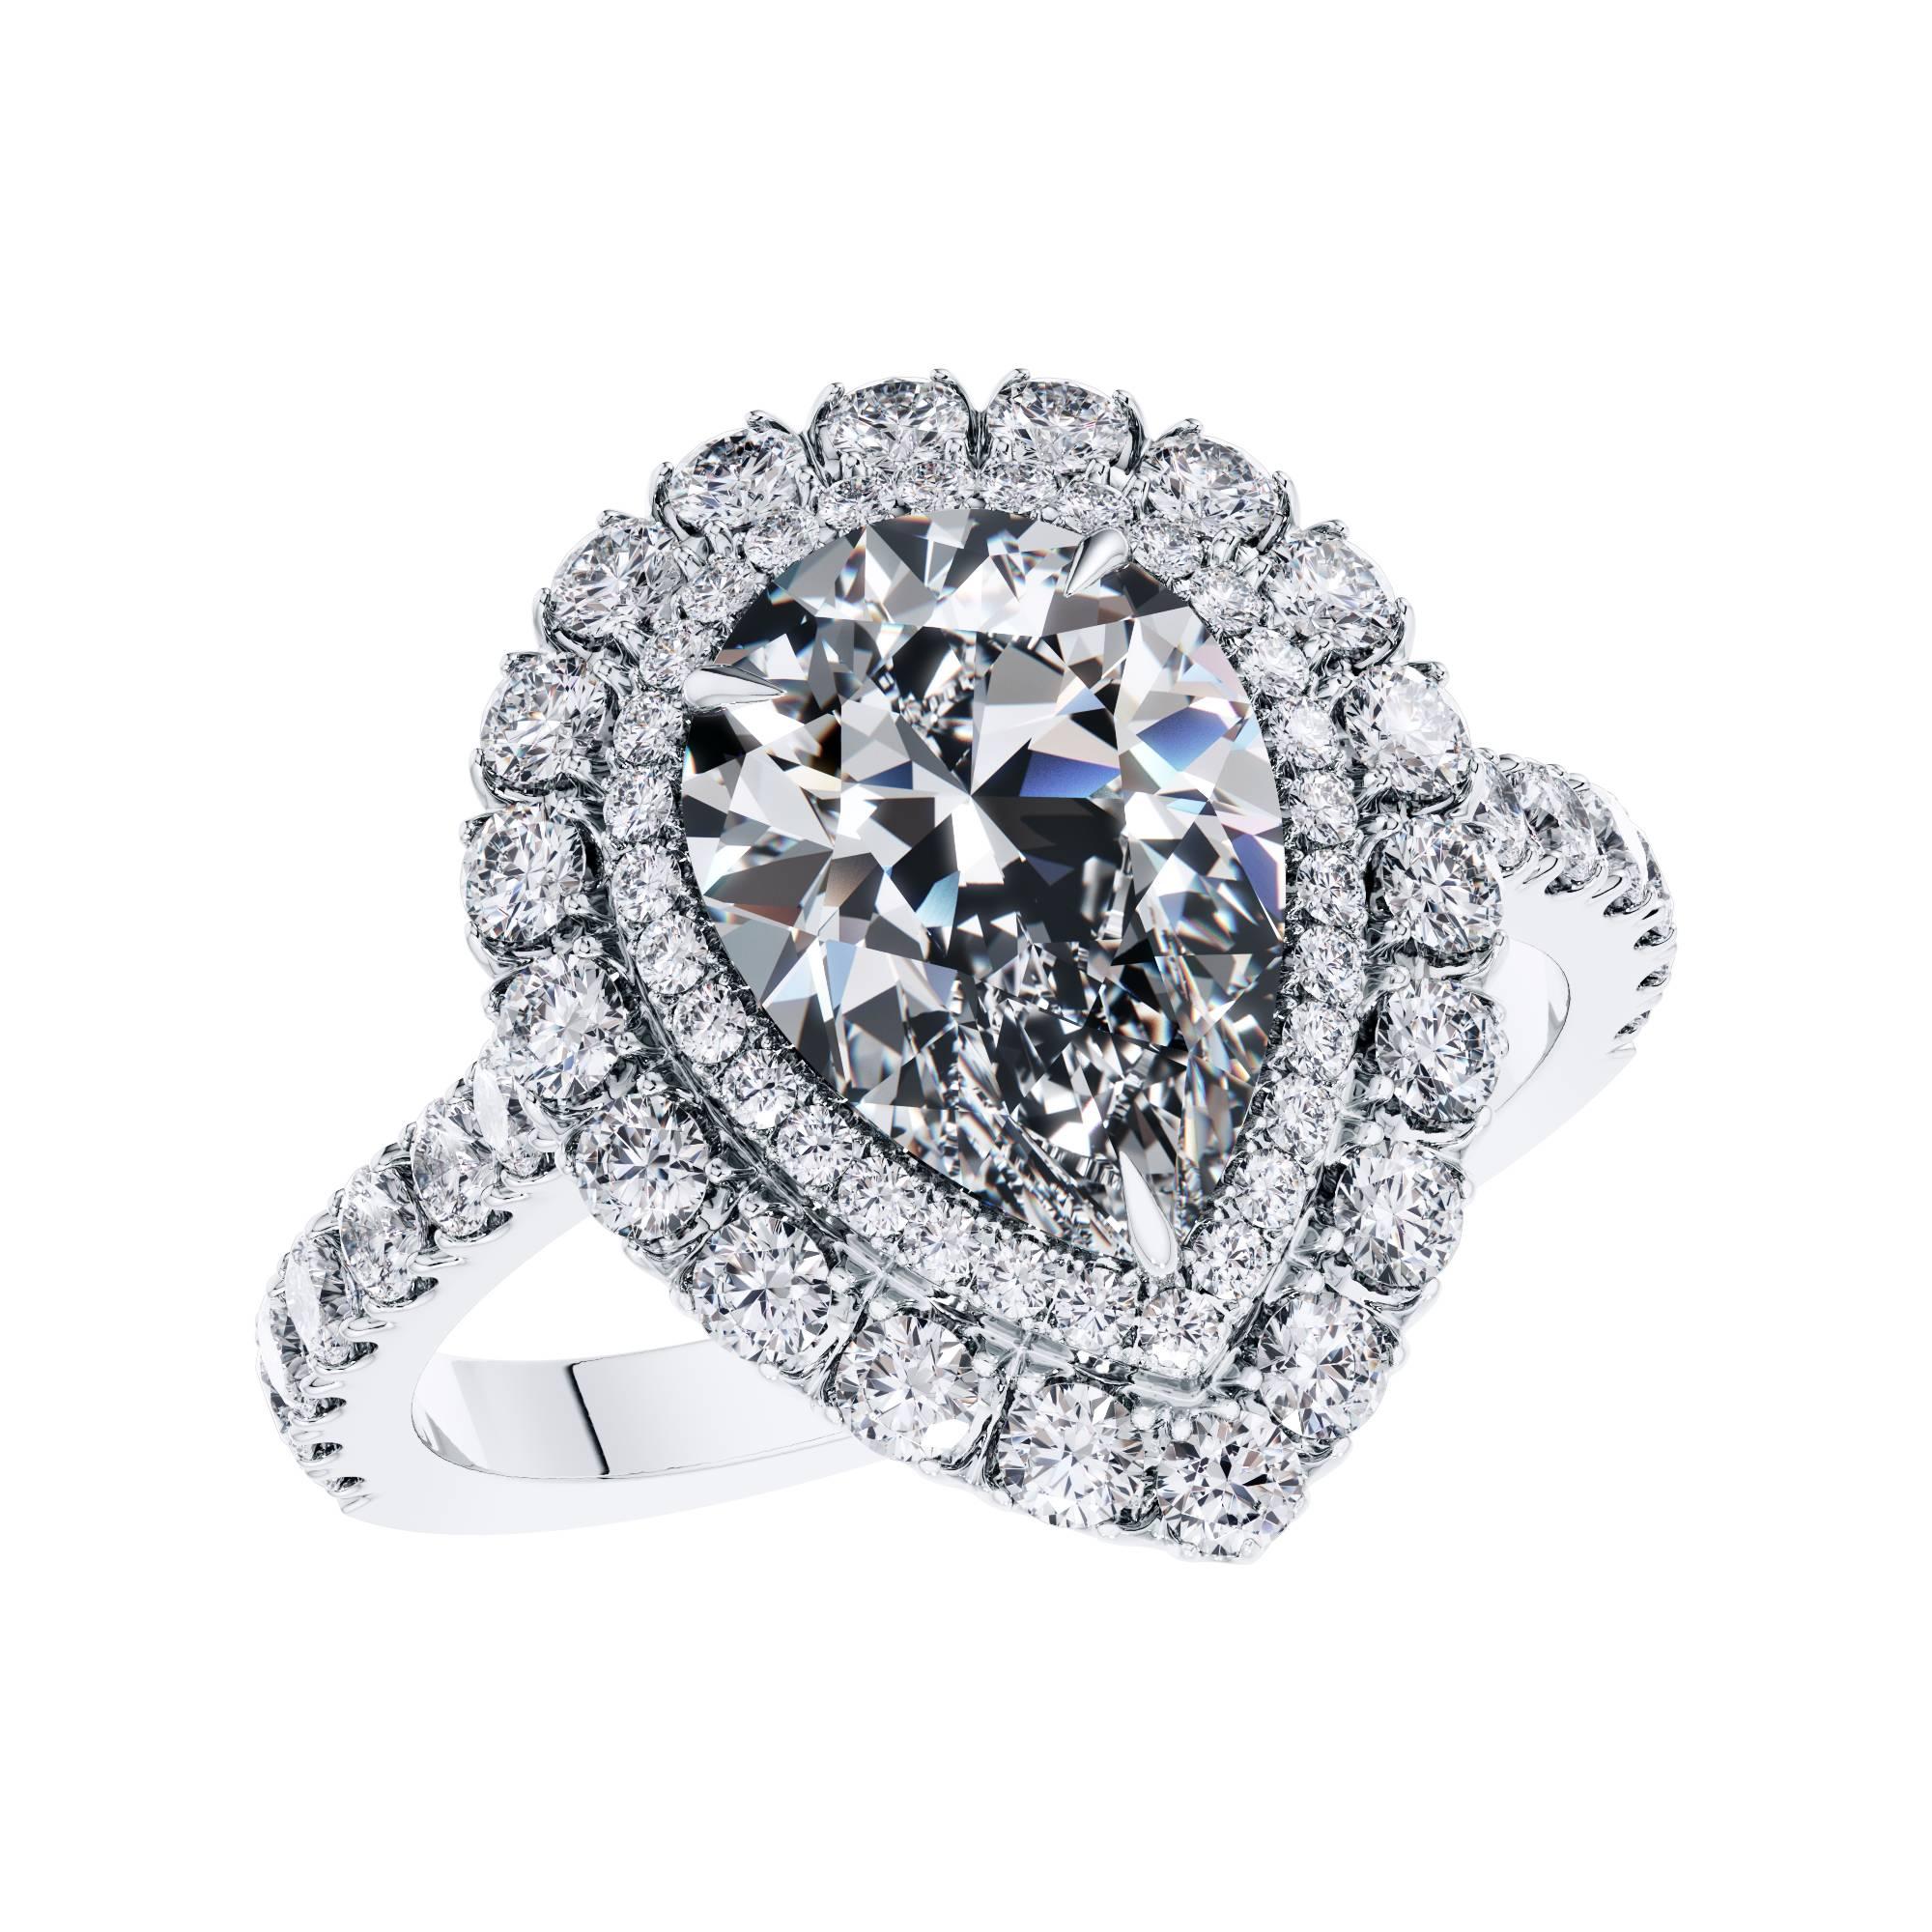 Erstellen Sie Ihr eigenes maßgeschneidertes Stück zeitlosen Schmucks. Dieser atemberaubende GIA-zertifizierte 2,00-Karat-Diamant der Farbe D - Klarheit VS2 in Birnenform, der in der Mitte des Rings gefasst ist, verfügt über 0,90 Karat passender